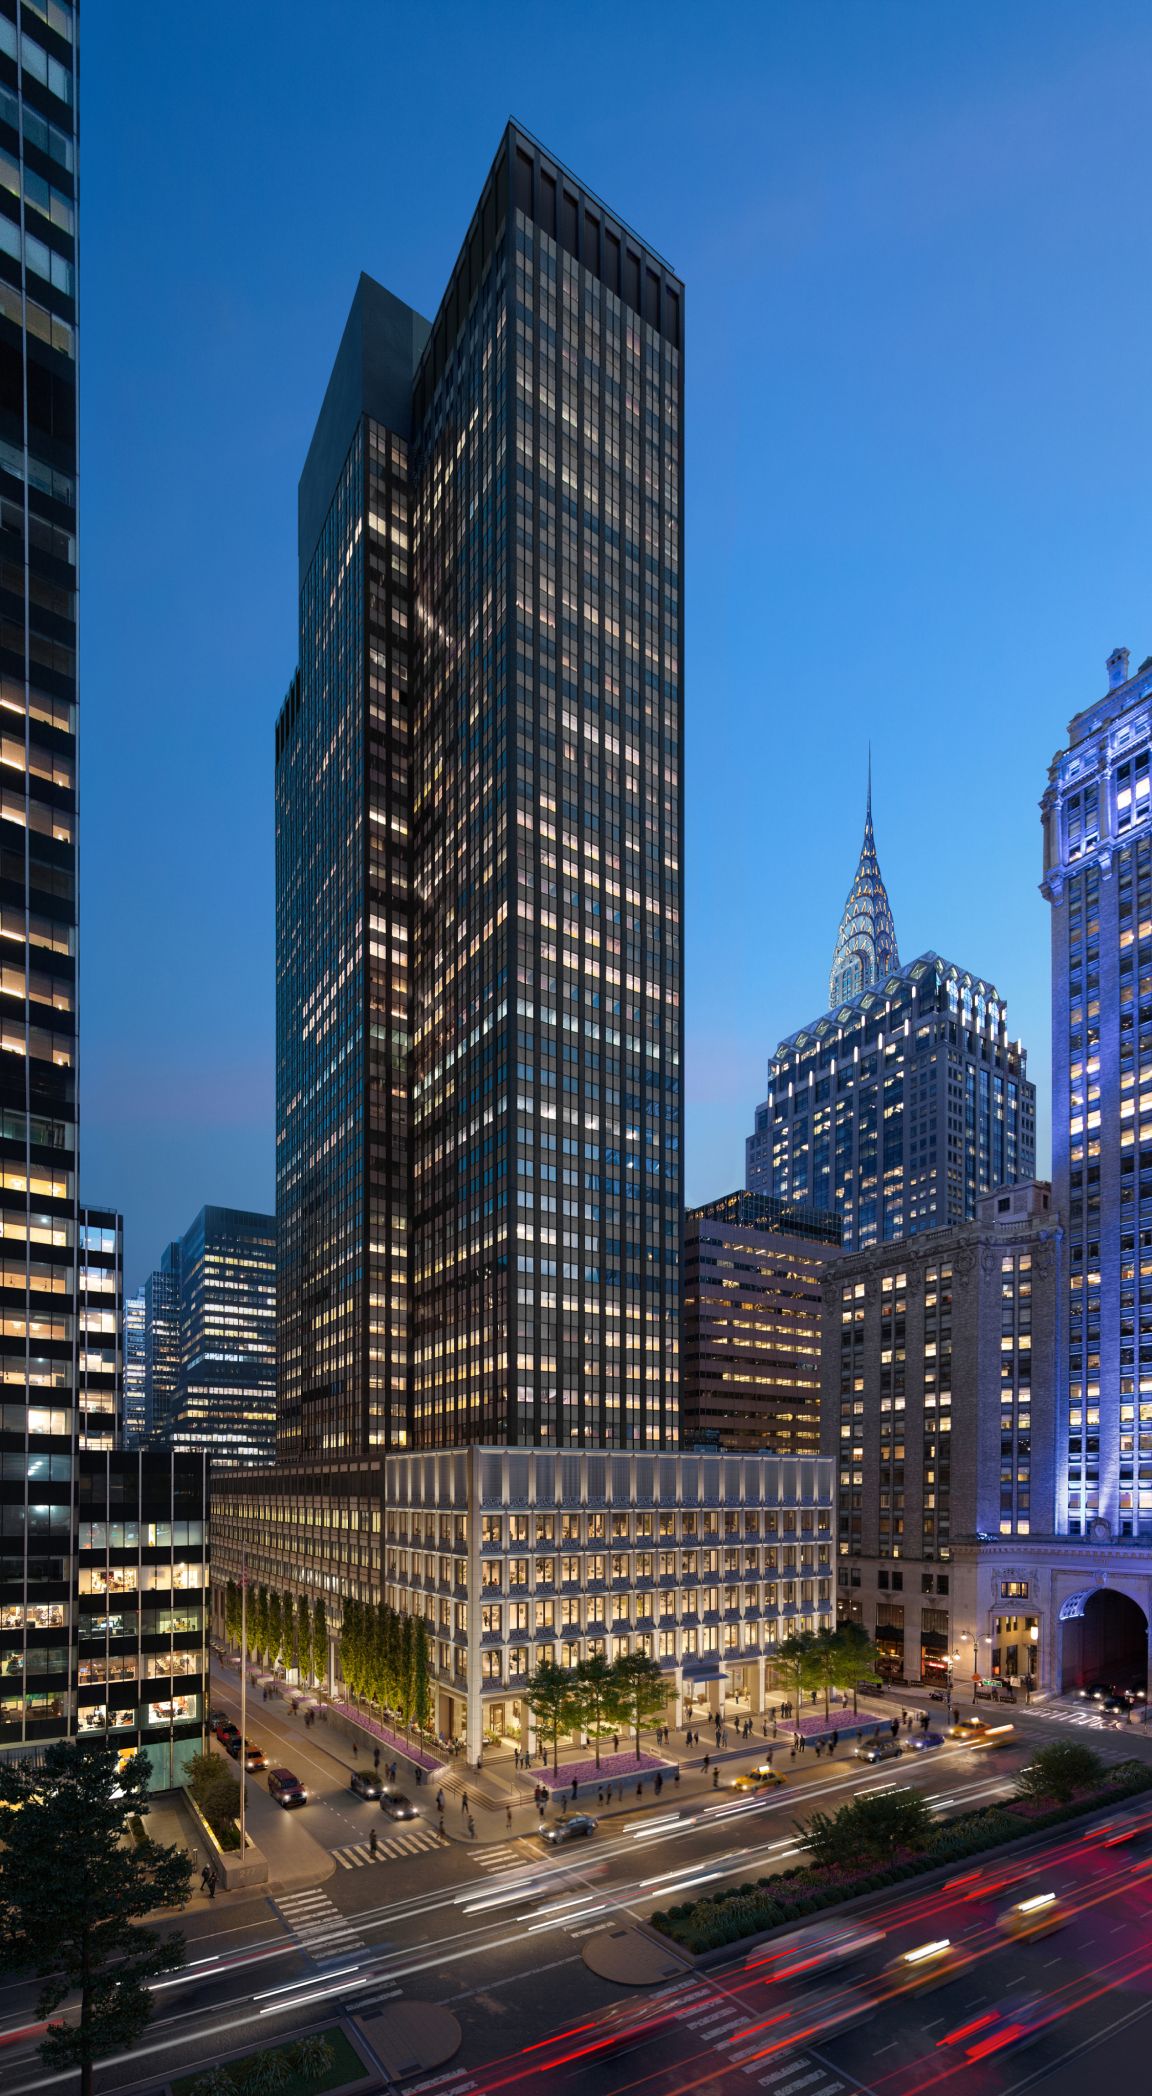 245 Park Avenue occupies a full square block of prime Midtown Manhattan